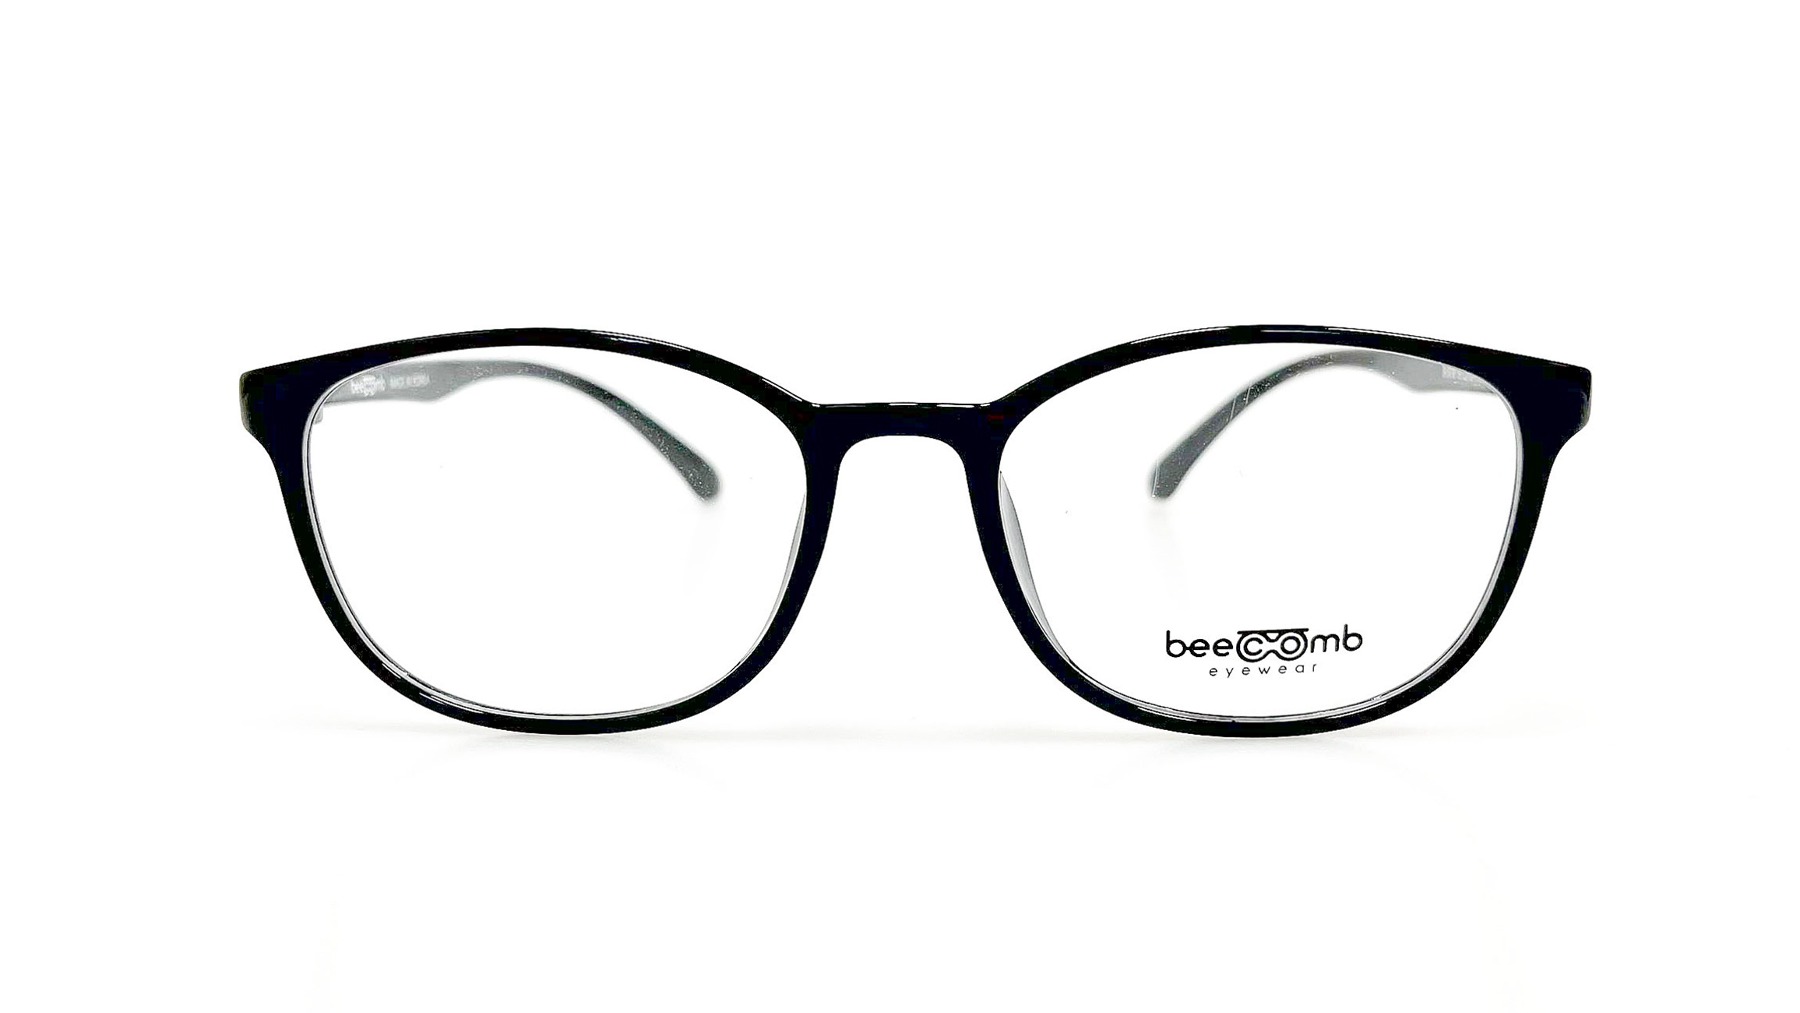 B-579, Korean glasses, sunglasses, eyeglasses, glasses